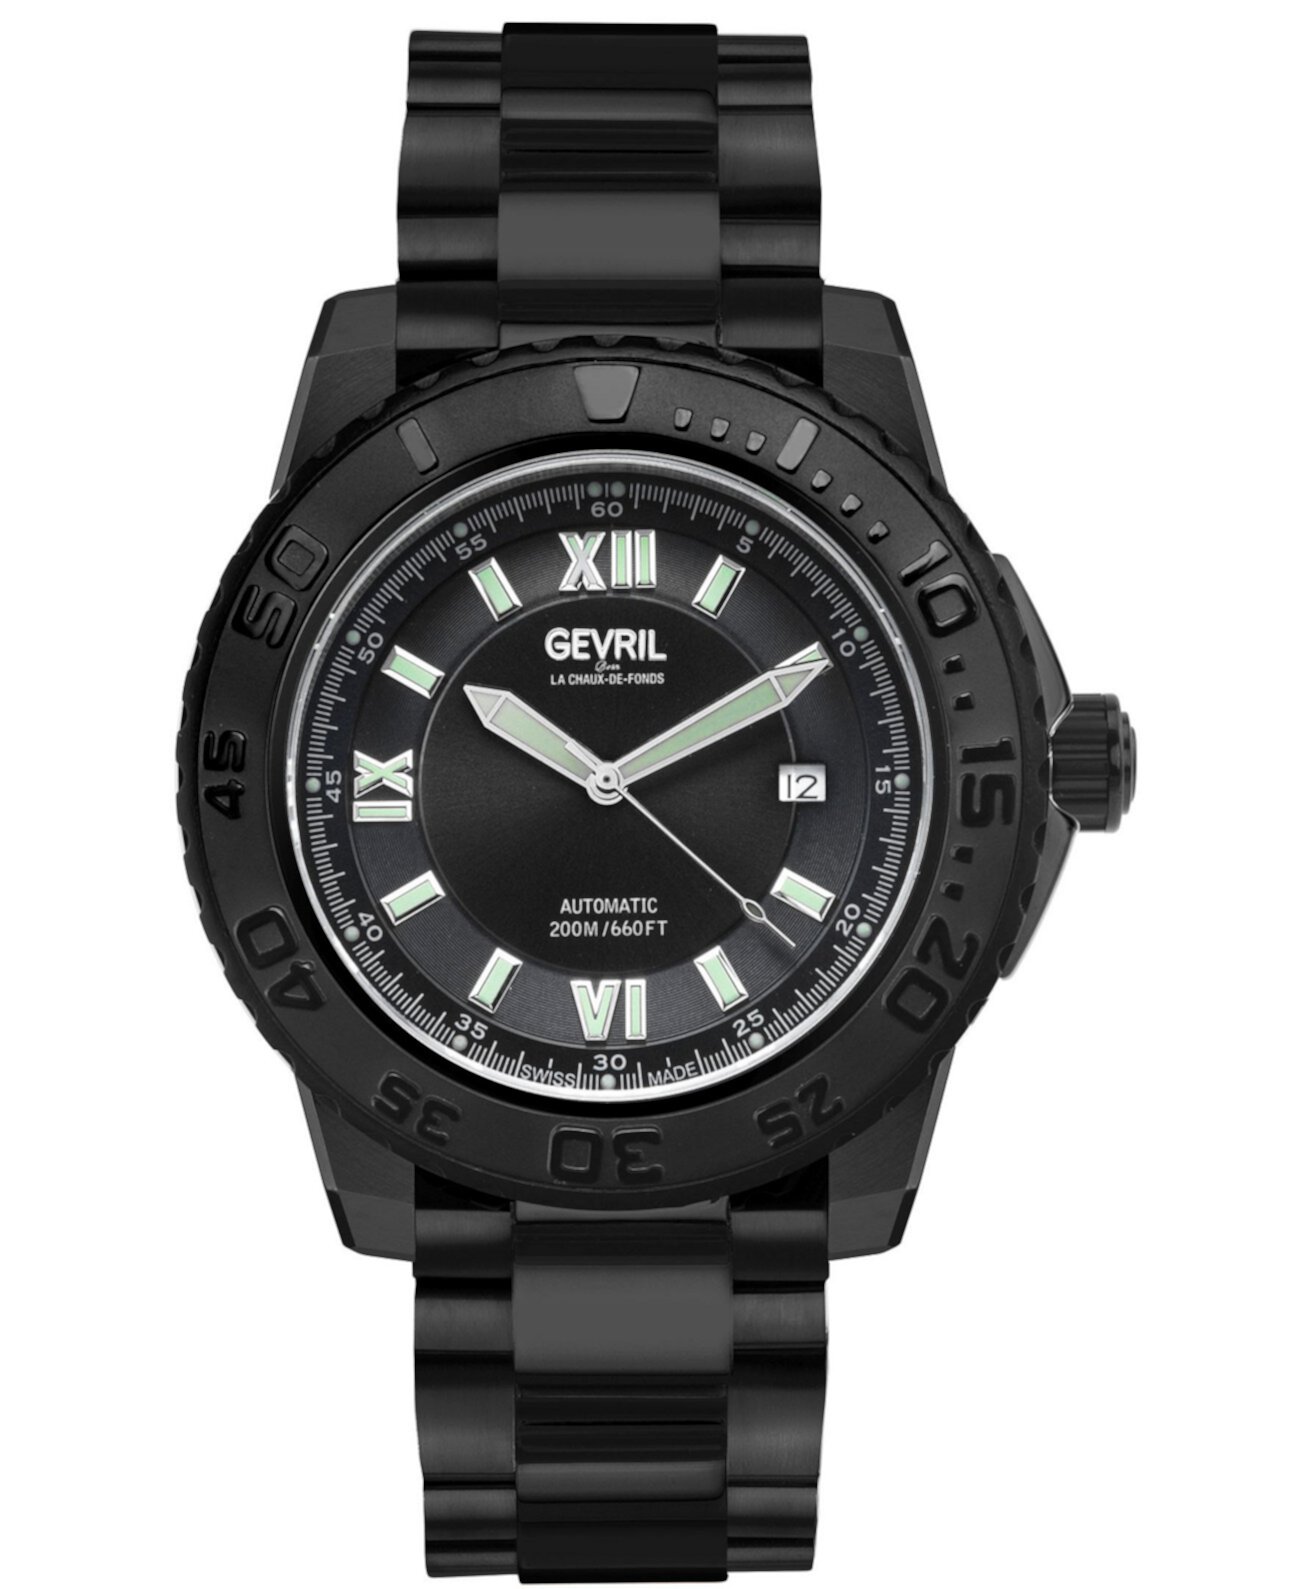 Мужские часы Seacloud Swiss Automatic с черным браслетом из нержавеющей стали 45 мм Gevril